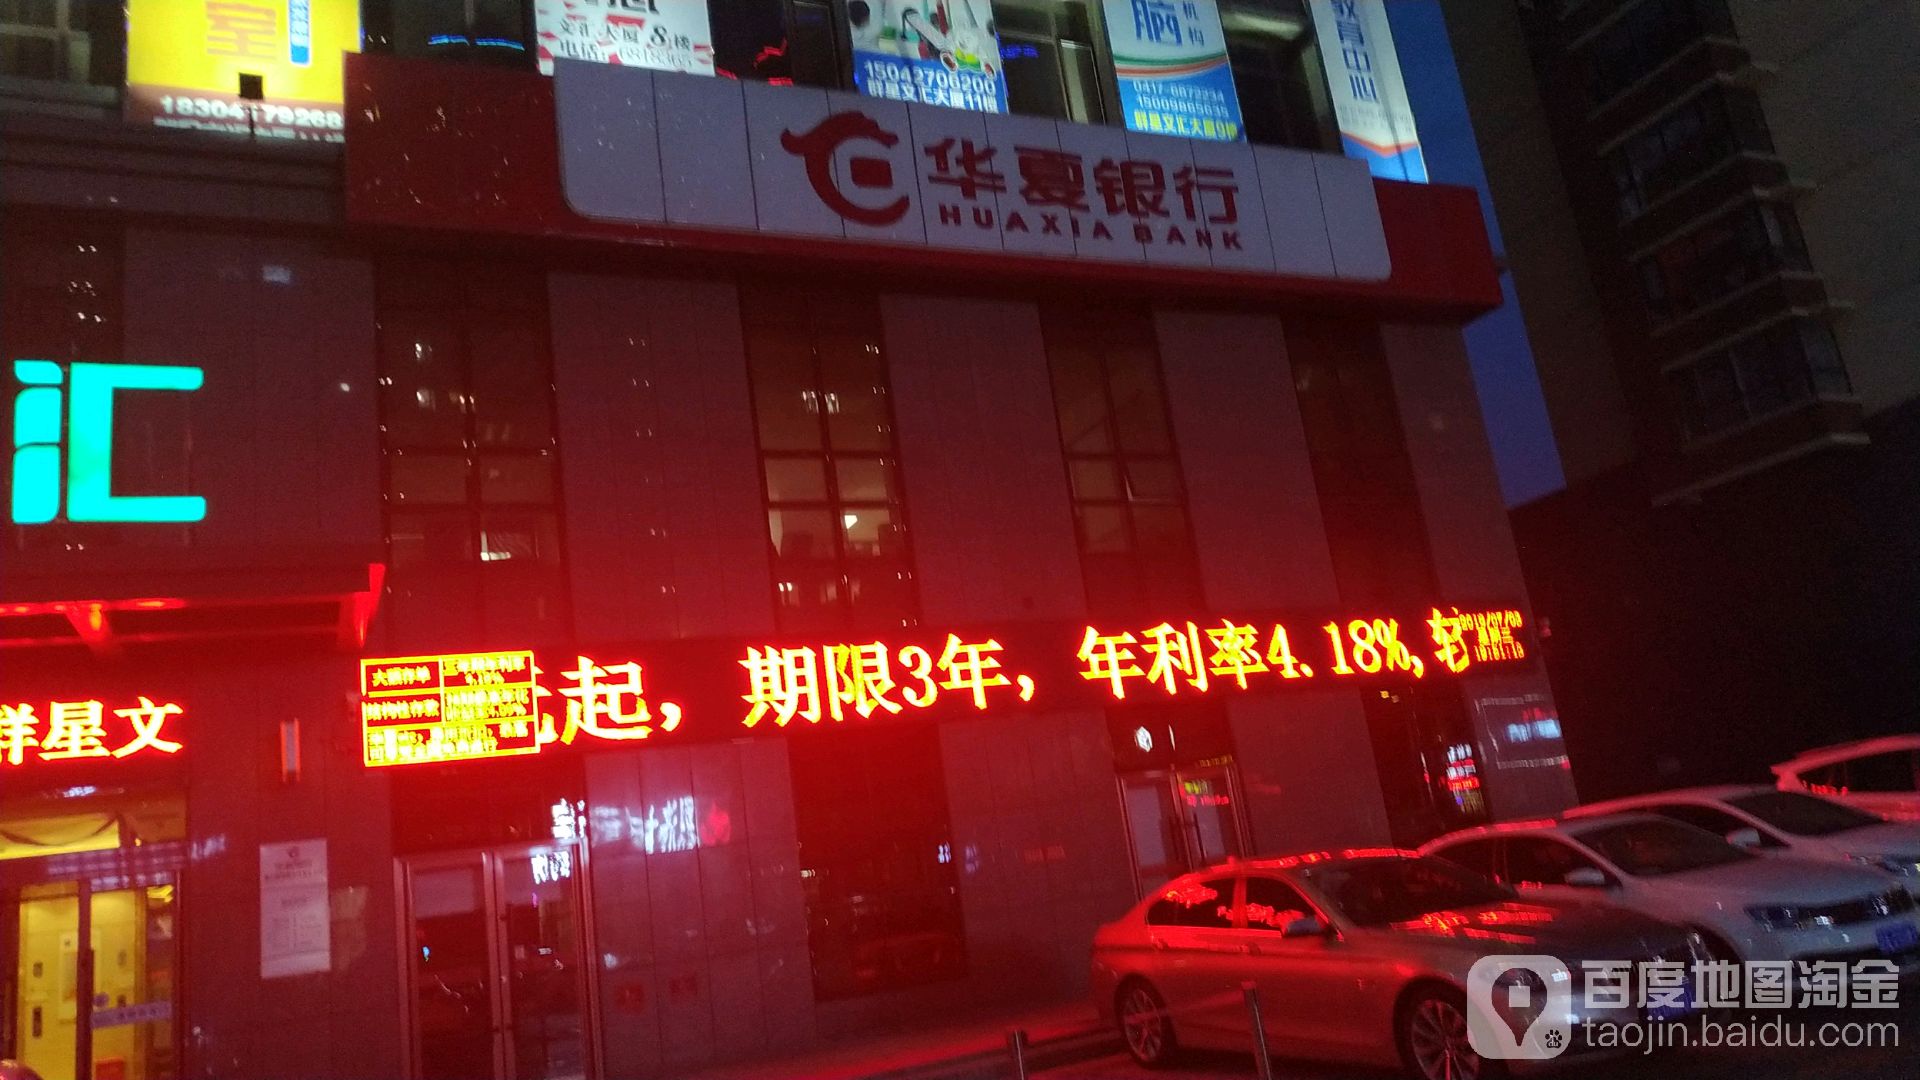 華夏銀行24小時自助銀行(營口開發區支行)